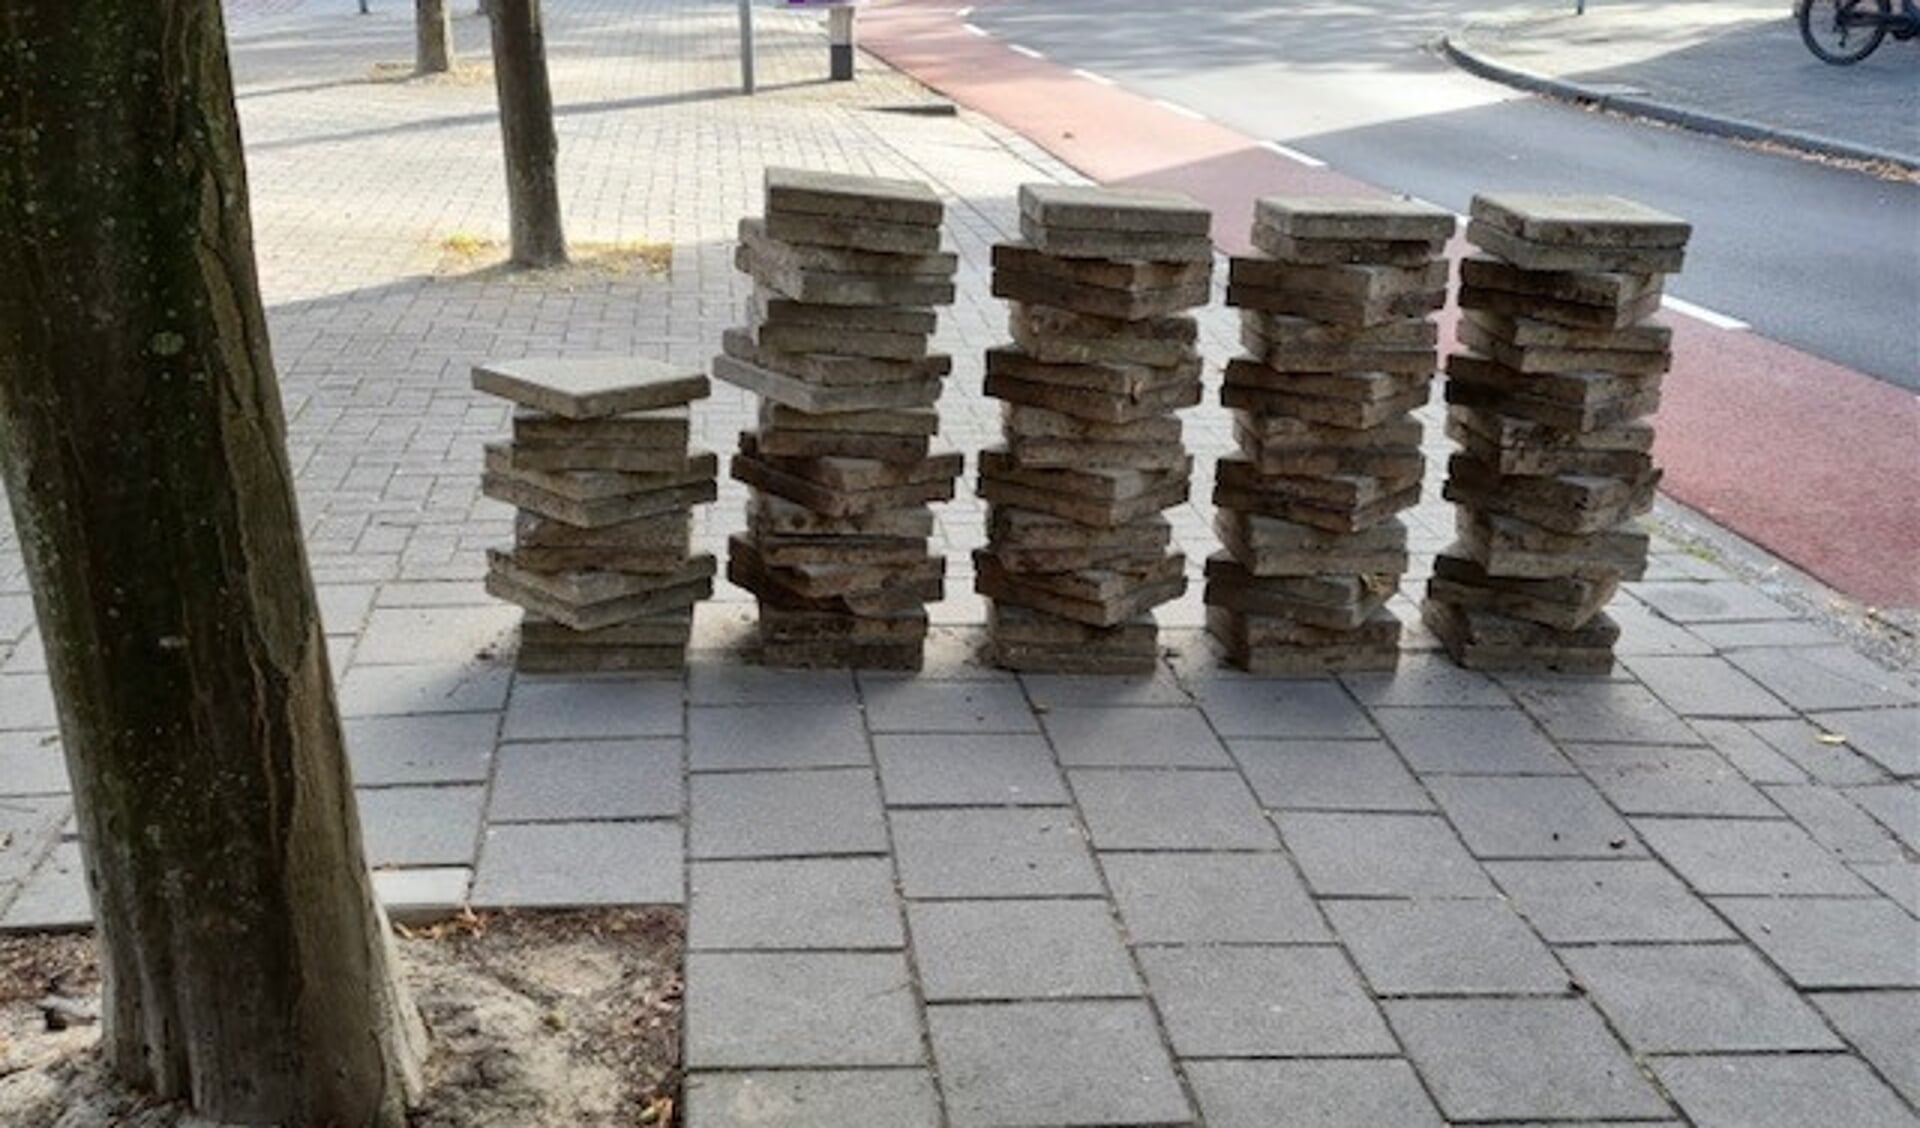 Van april tot en met oktober worden op verschillende maandagen de tegels van Amstelveners gratis opgehaald als ze hun tegels vervangen voor groen. 